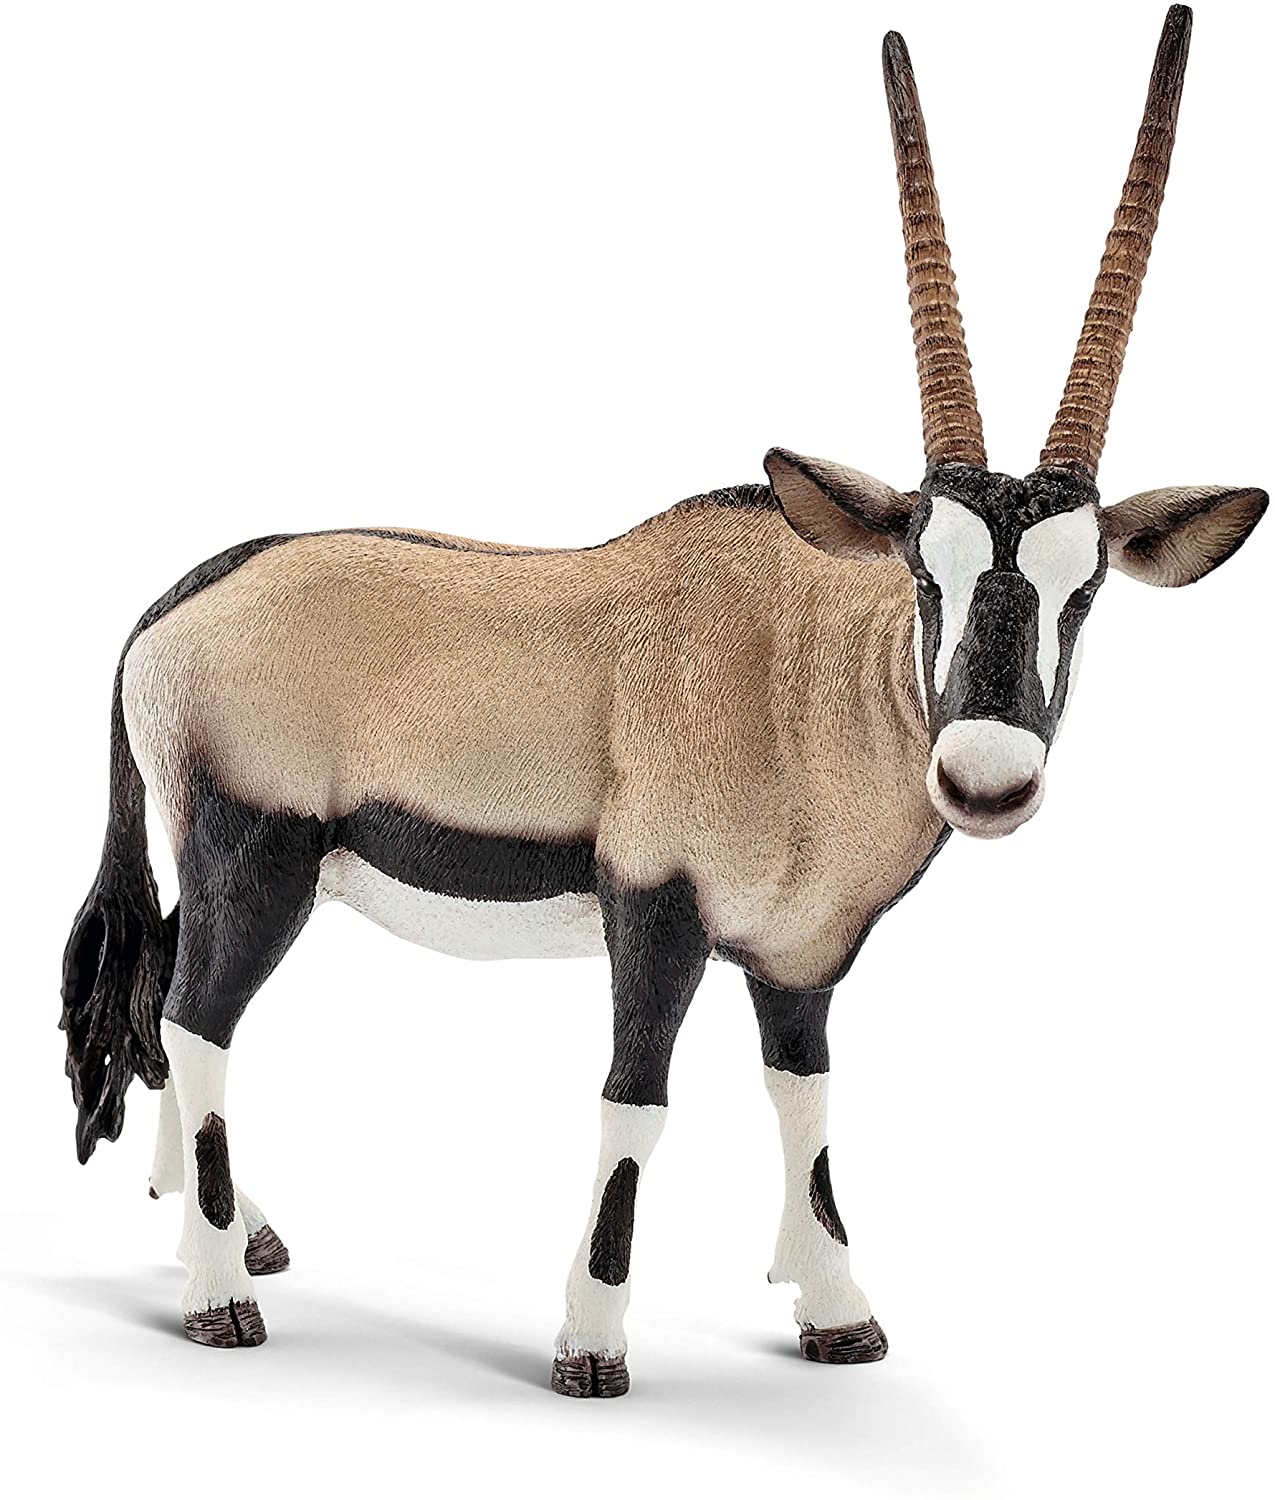 Schleich: Oryx - Ages 3+